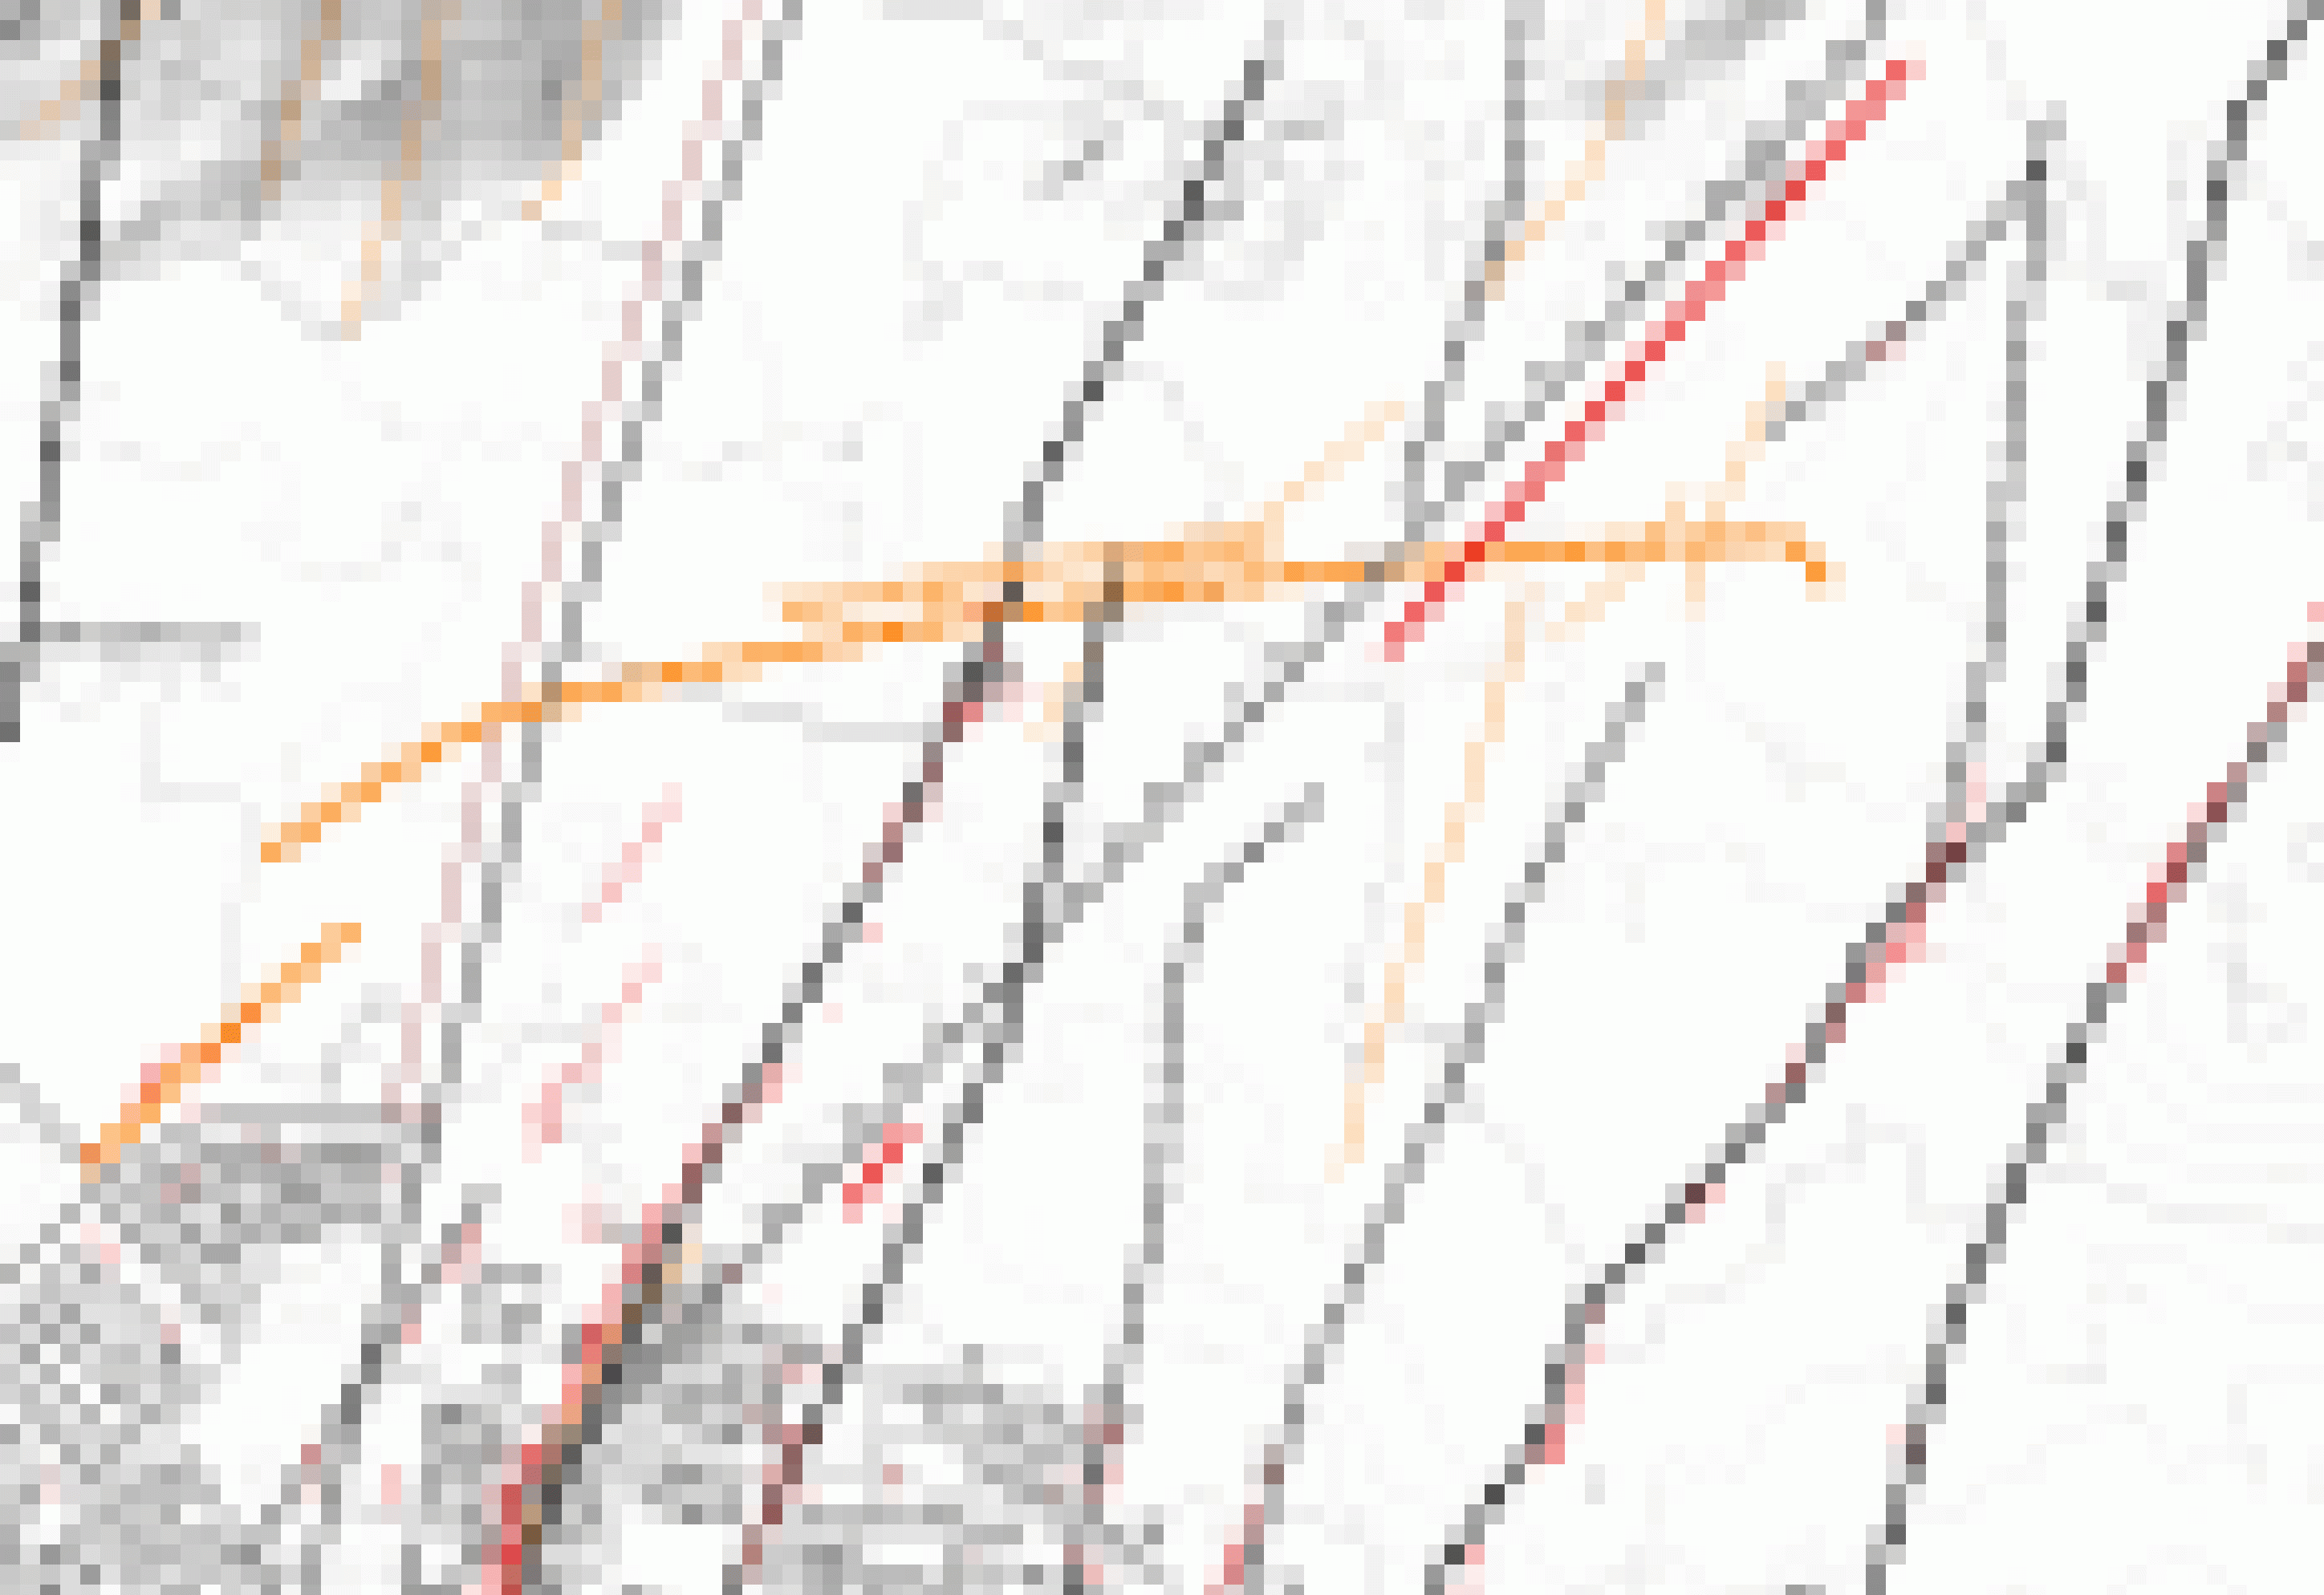 Eine Karte, im Südwesten einige Gebäude von Grindavík, die orange gestrichelte Linie des Schutzwalls verläuft von Südwest nach Nordost. Die rote Linie der Vulkanlinie schneidet den Wall, ist dann unterbrochen und erscheint dann als kurzer weiterer Strich nahe am Ortsrand.